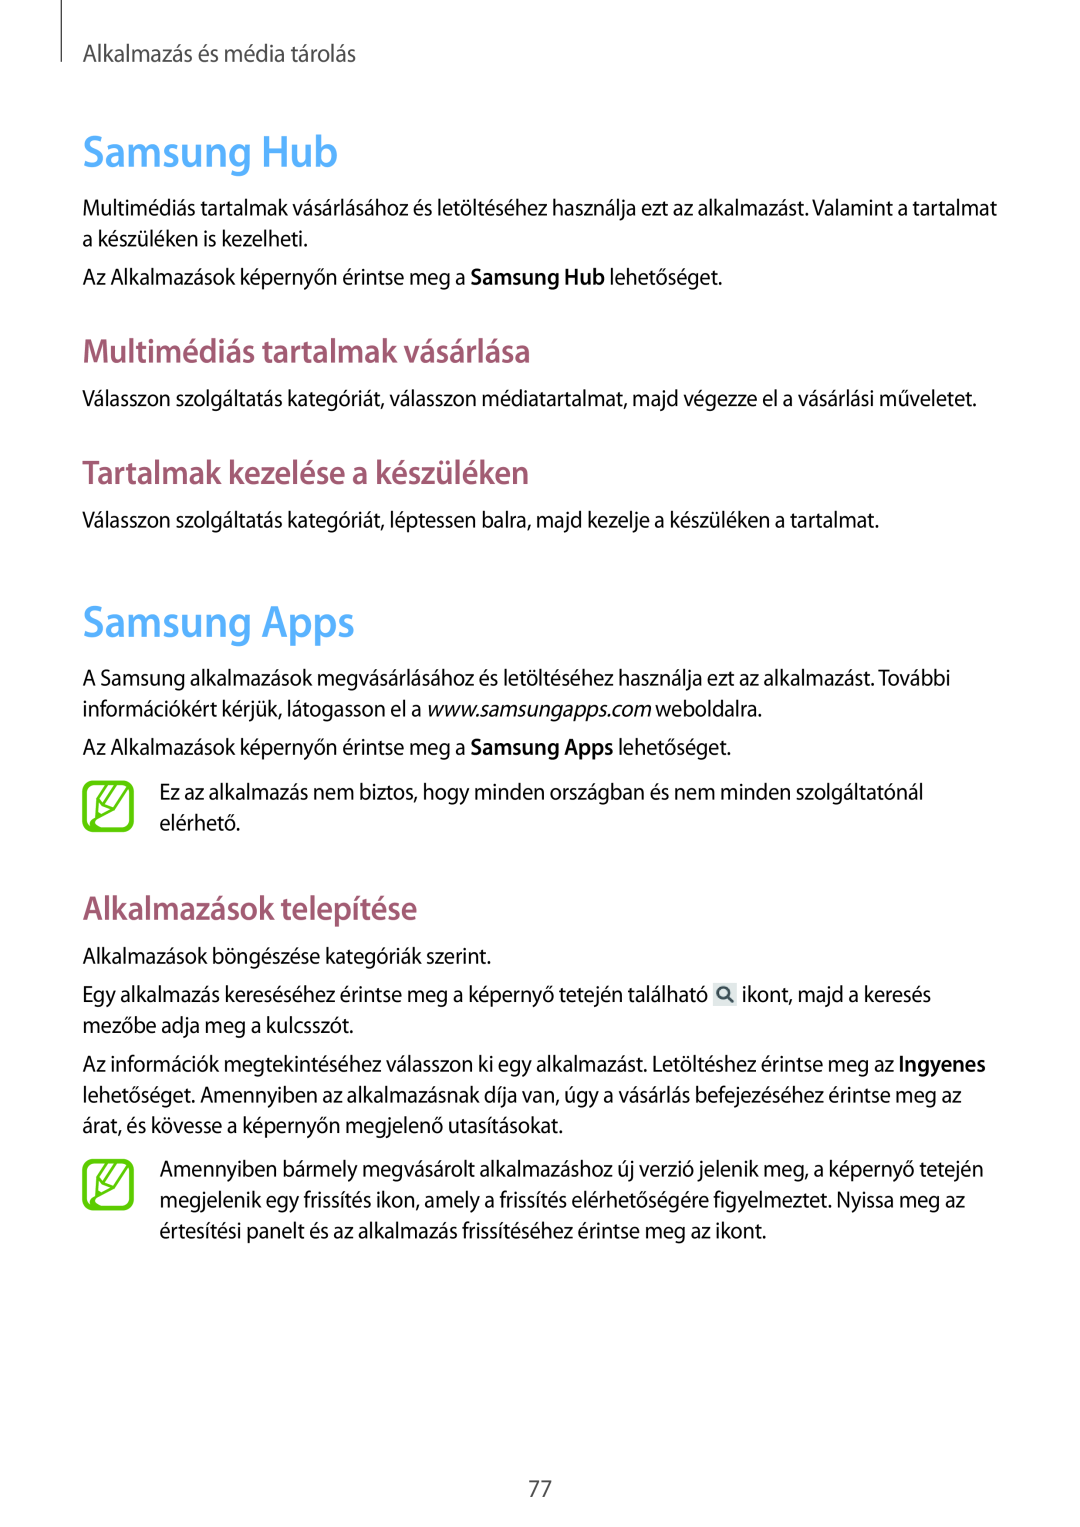 Samsung SM-G3815RWAVGR manual Samsung Hub, Samsung Apps, Multimédiás tartalmak vásárlása, Tartalmak kezelése a készüléken 